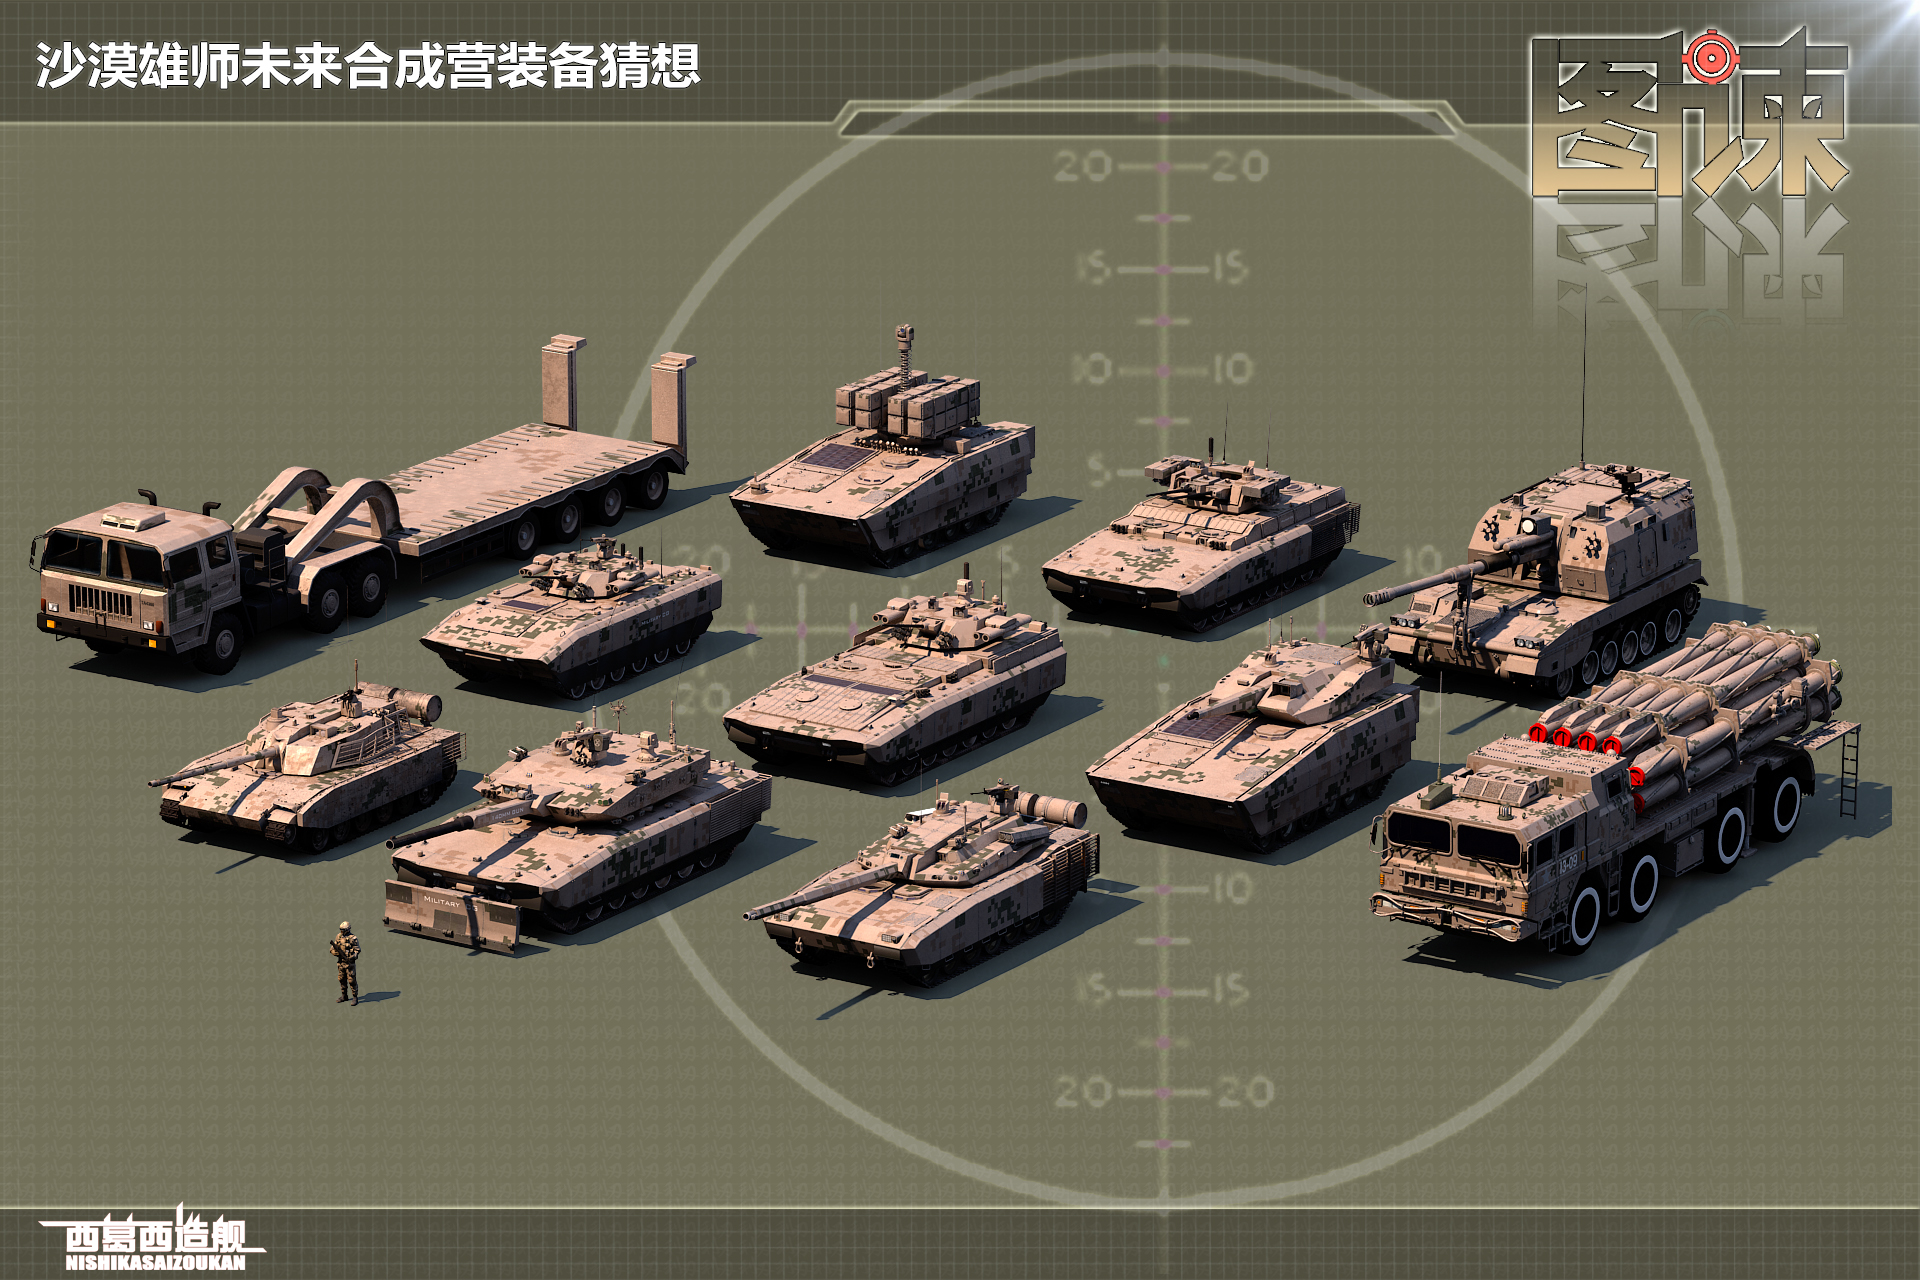 图谏cg:中国第四代坦克亮相 装备140毫米巨炮